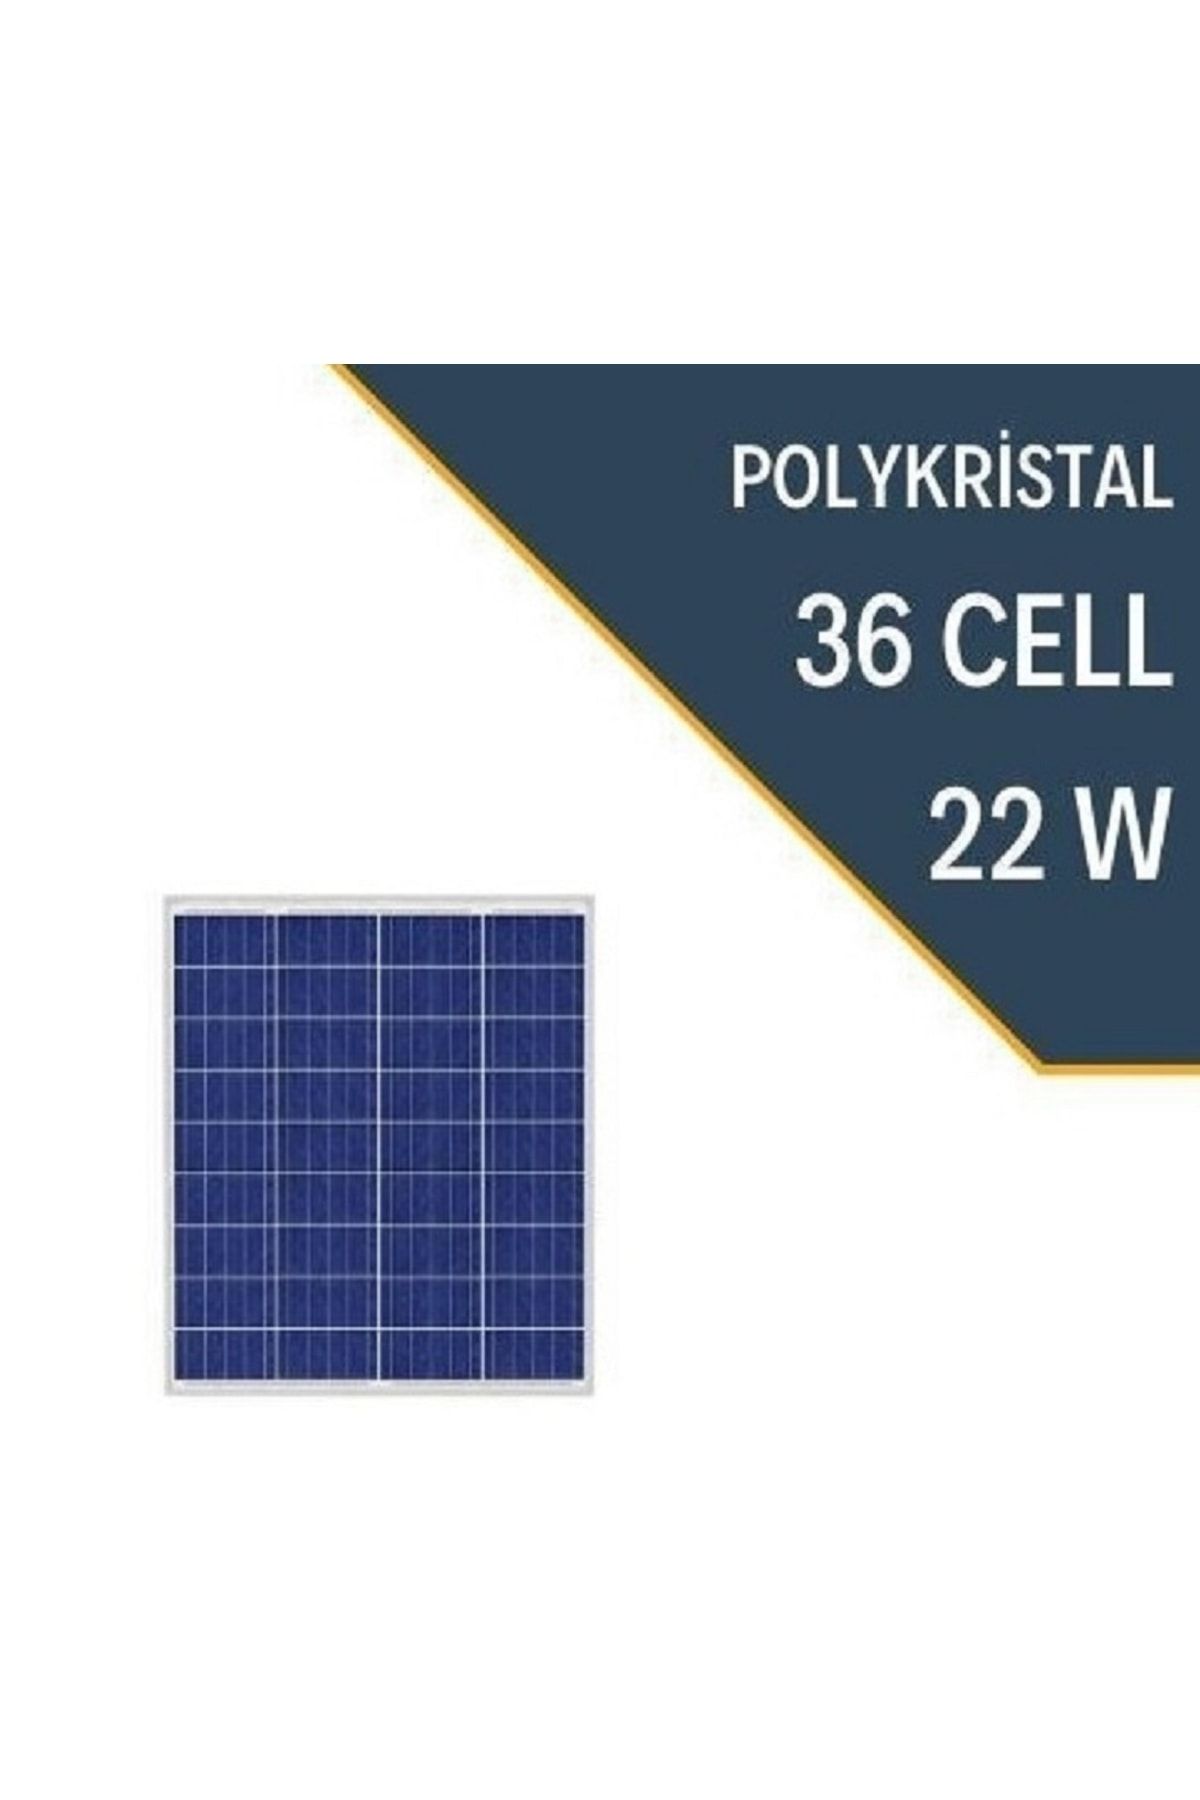 Lexron 22 Watt Polikristal Güneş Paneli